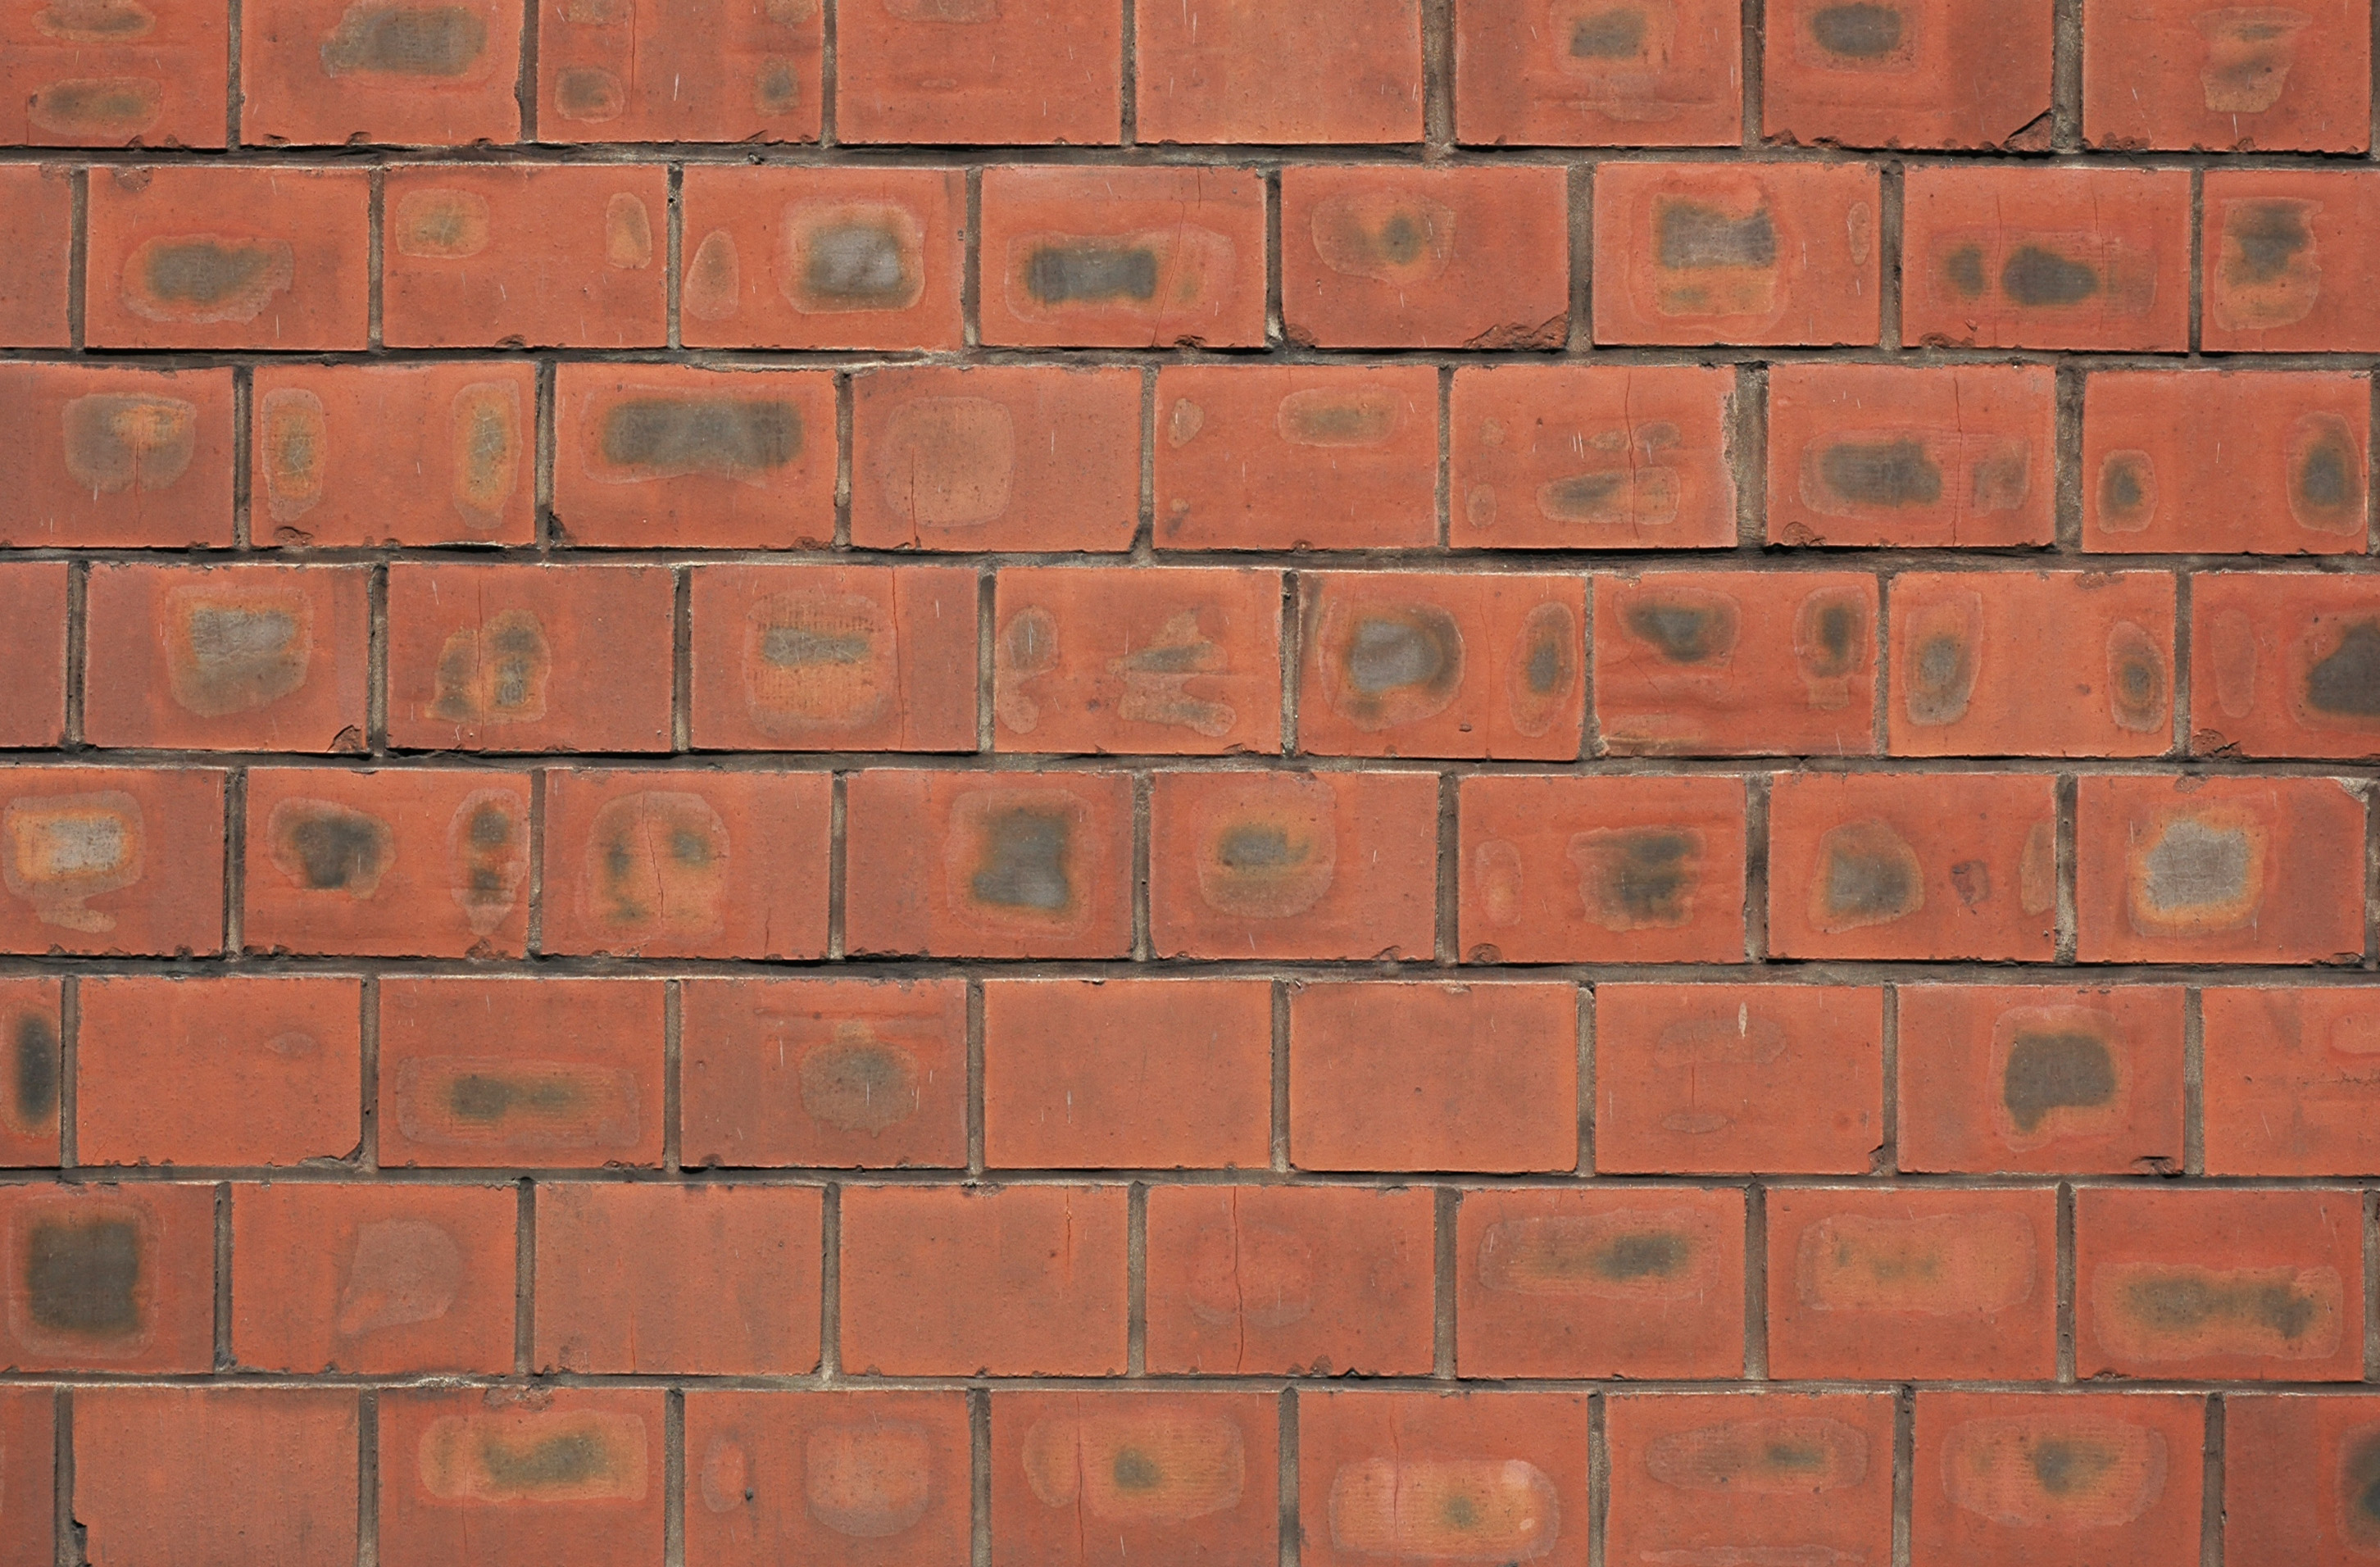 brick wall, brick wall, Texture brick wall, bricks, bricks texture